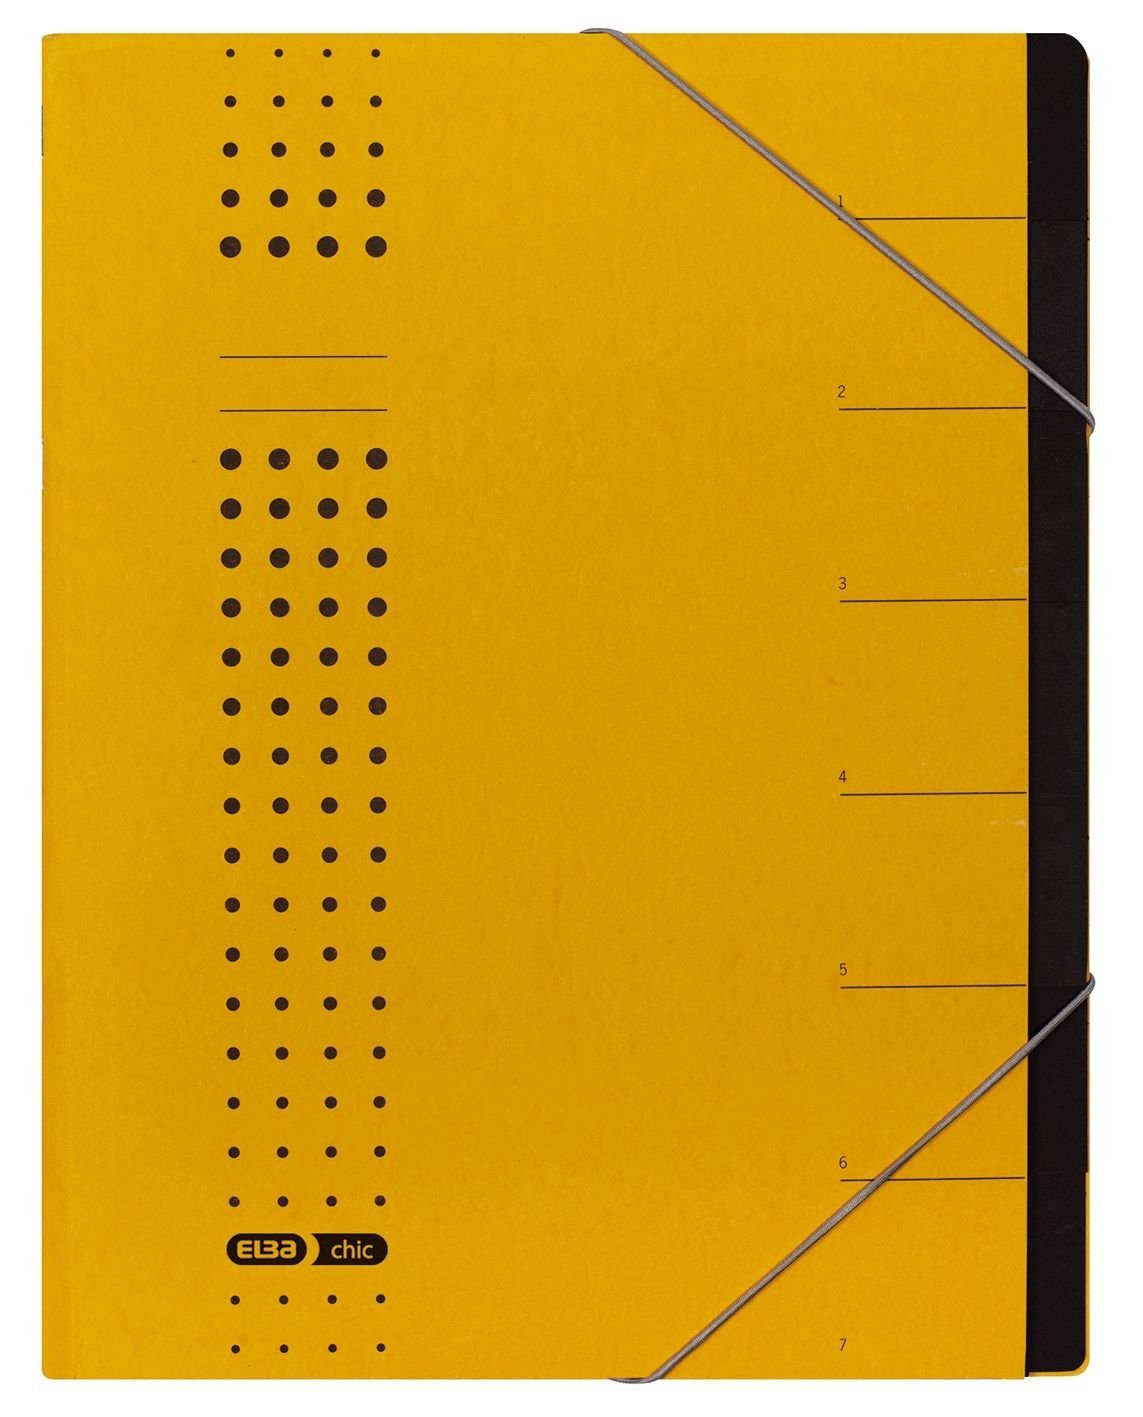 ELBA Schreibmappe Karton gelb, ELBA A4 chic-Ordnungsmappe, 1-7, Fächer